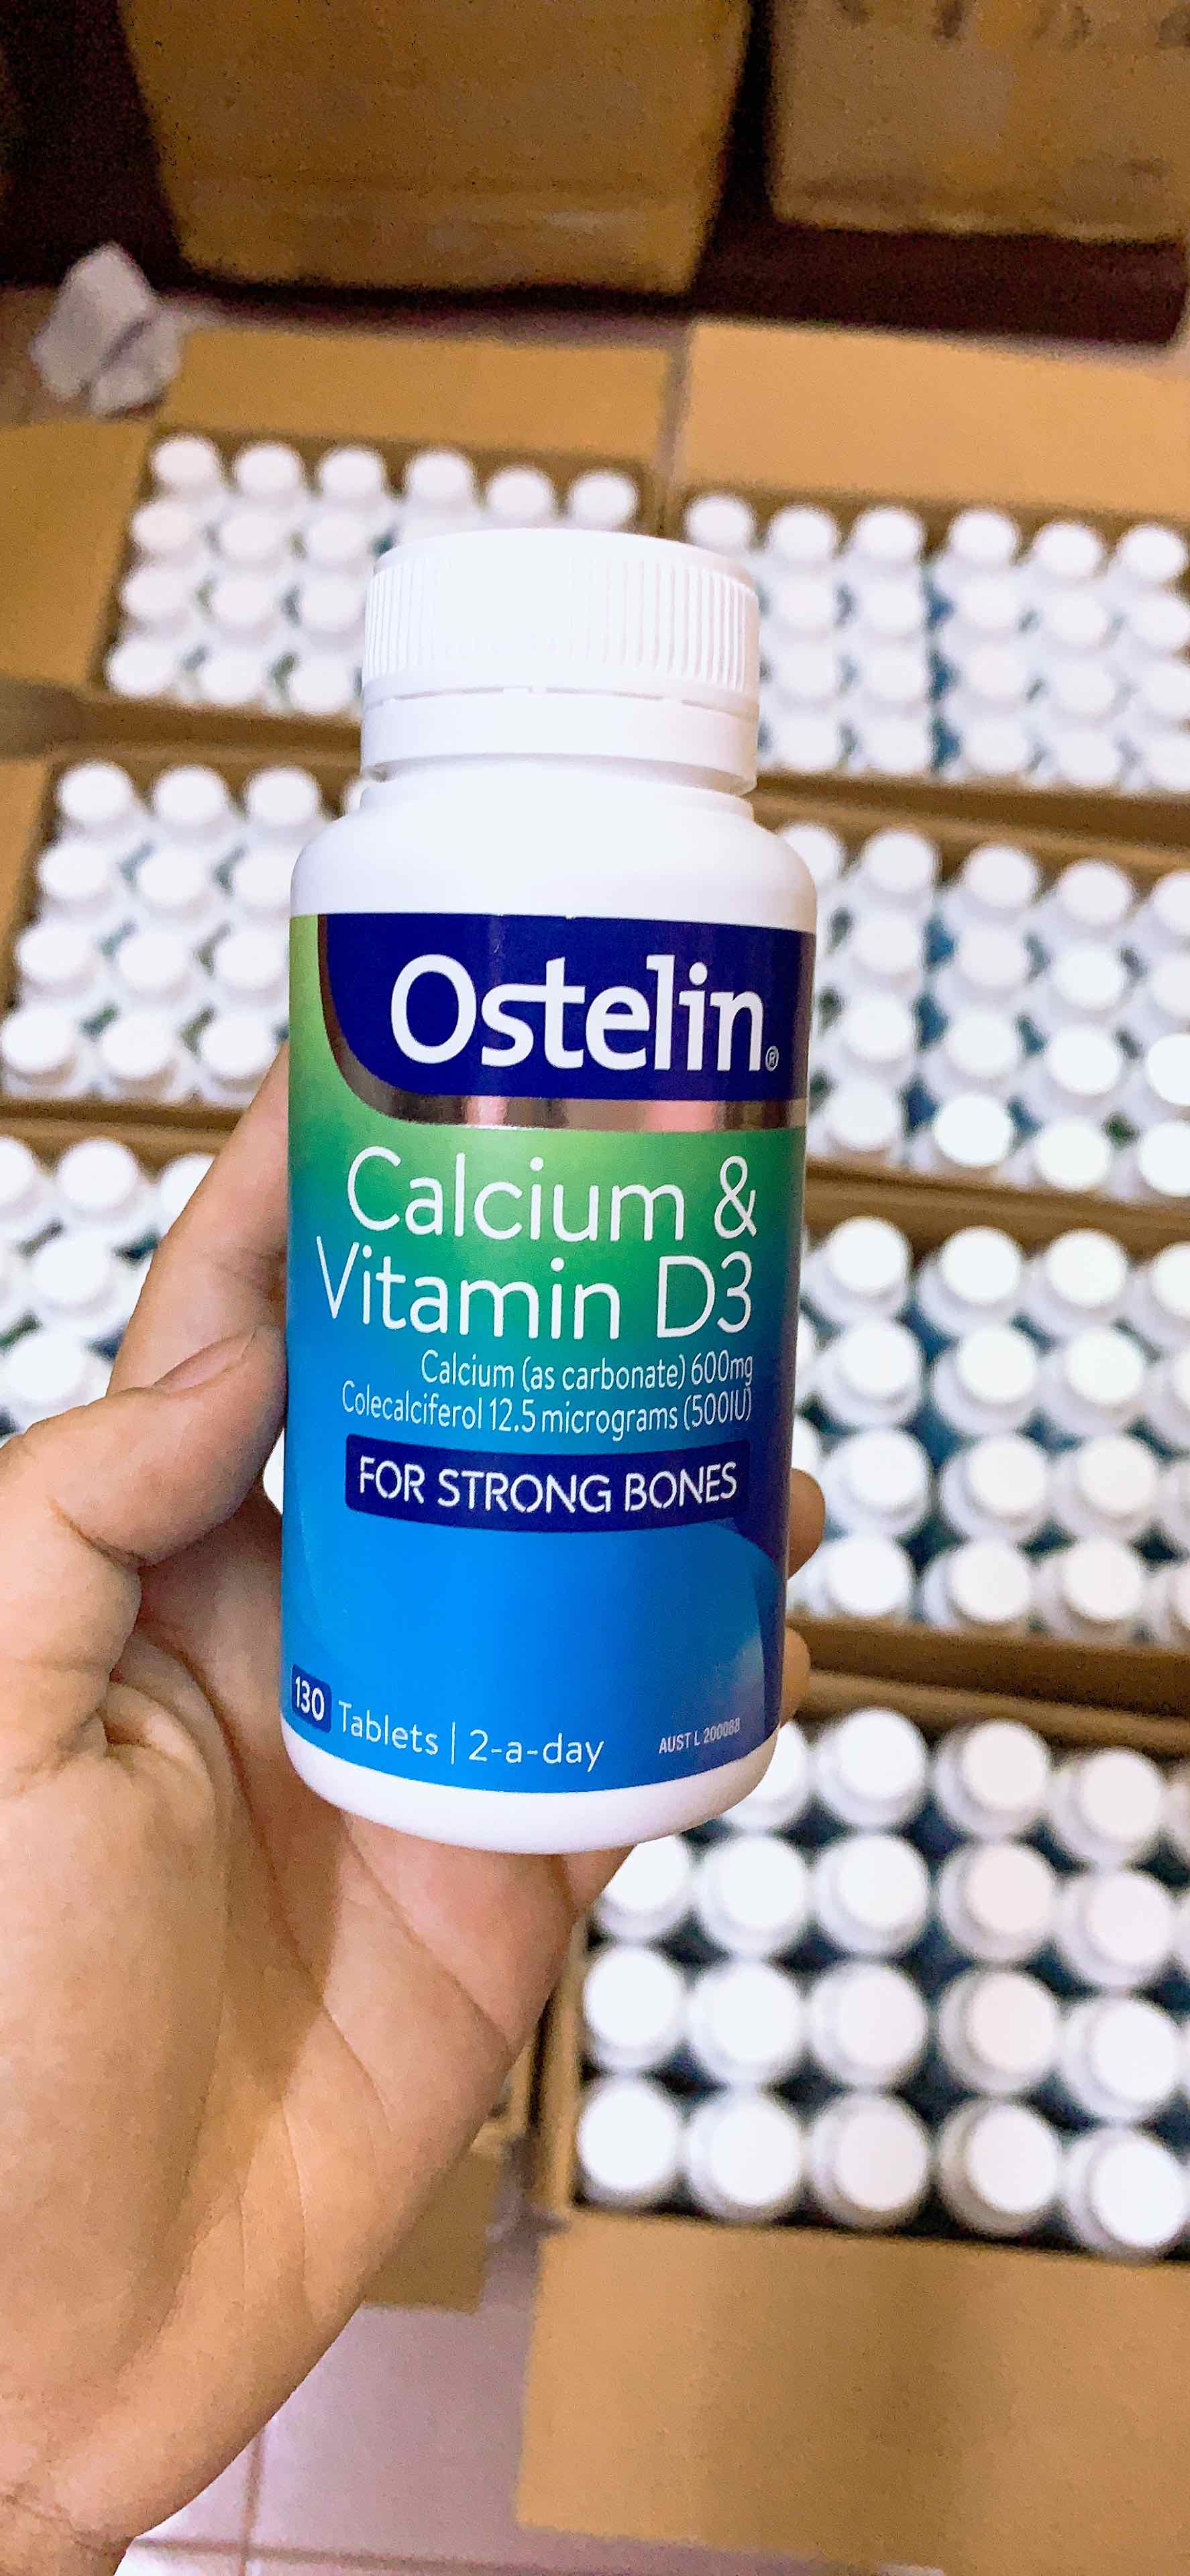 [Mẫu mới] Viên Uống Canxi Cho Bà Bầu Ostelin Calcium & Vitamin D3 - 130 Viên